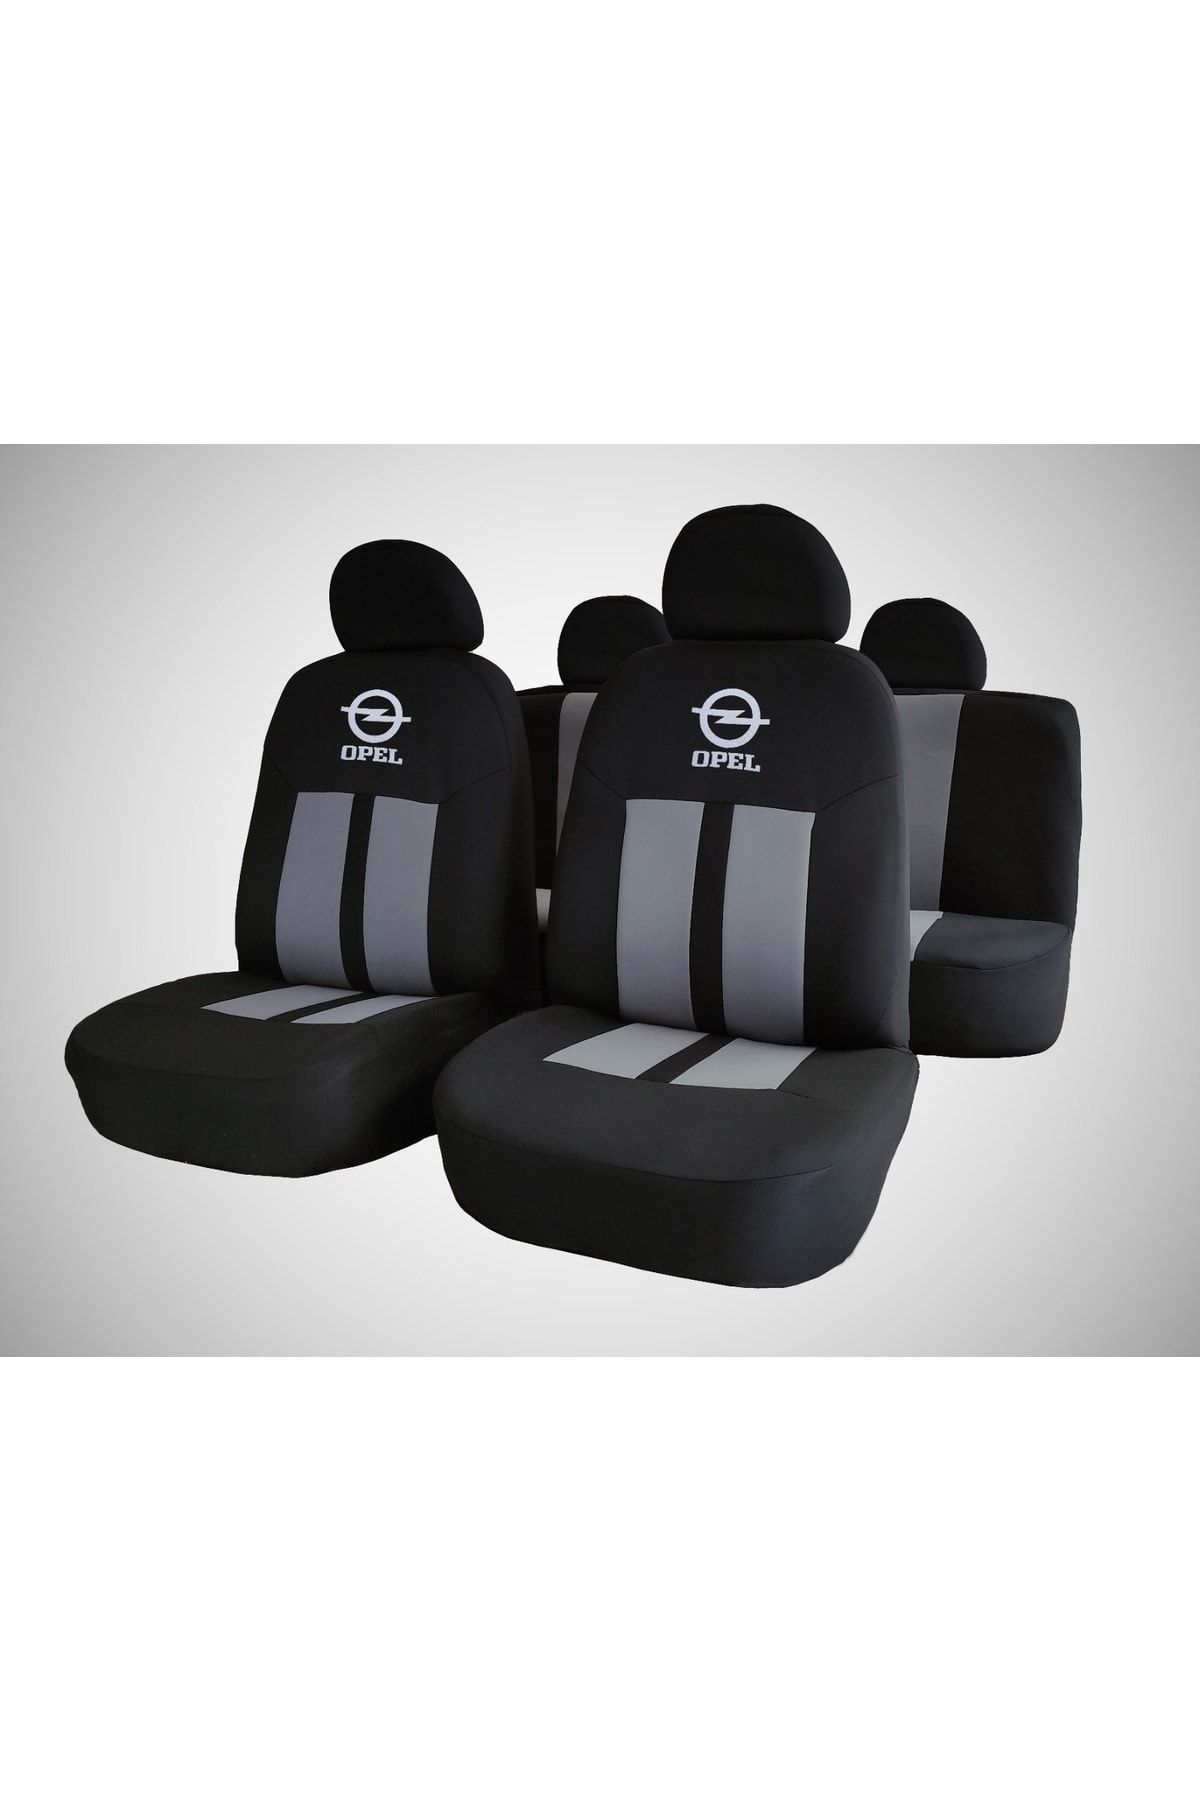 Modern Garaj Opel Astra, Corsa, Vectra Compatible Car Seat Cover